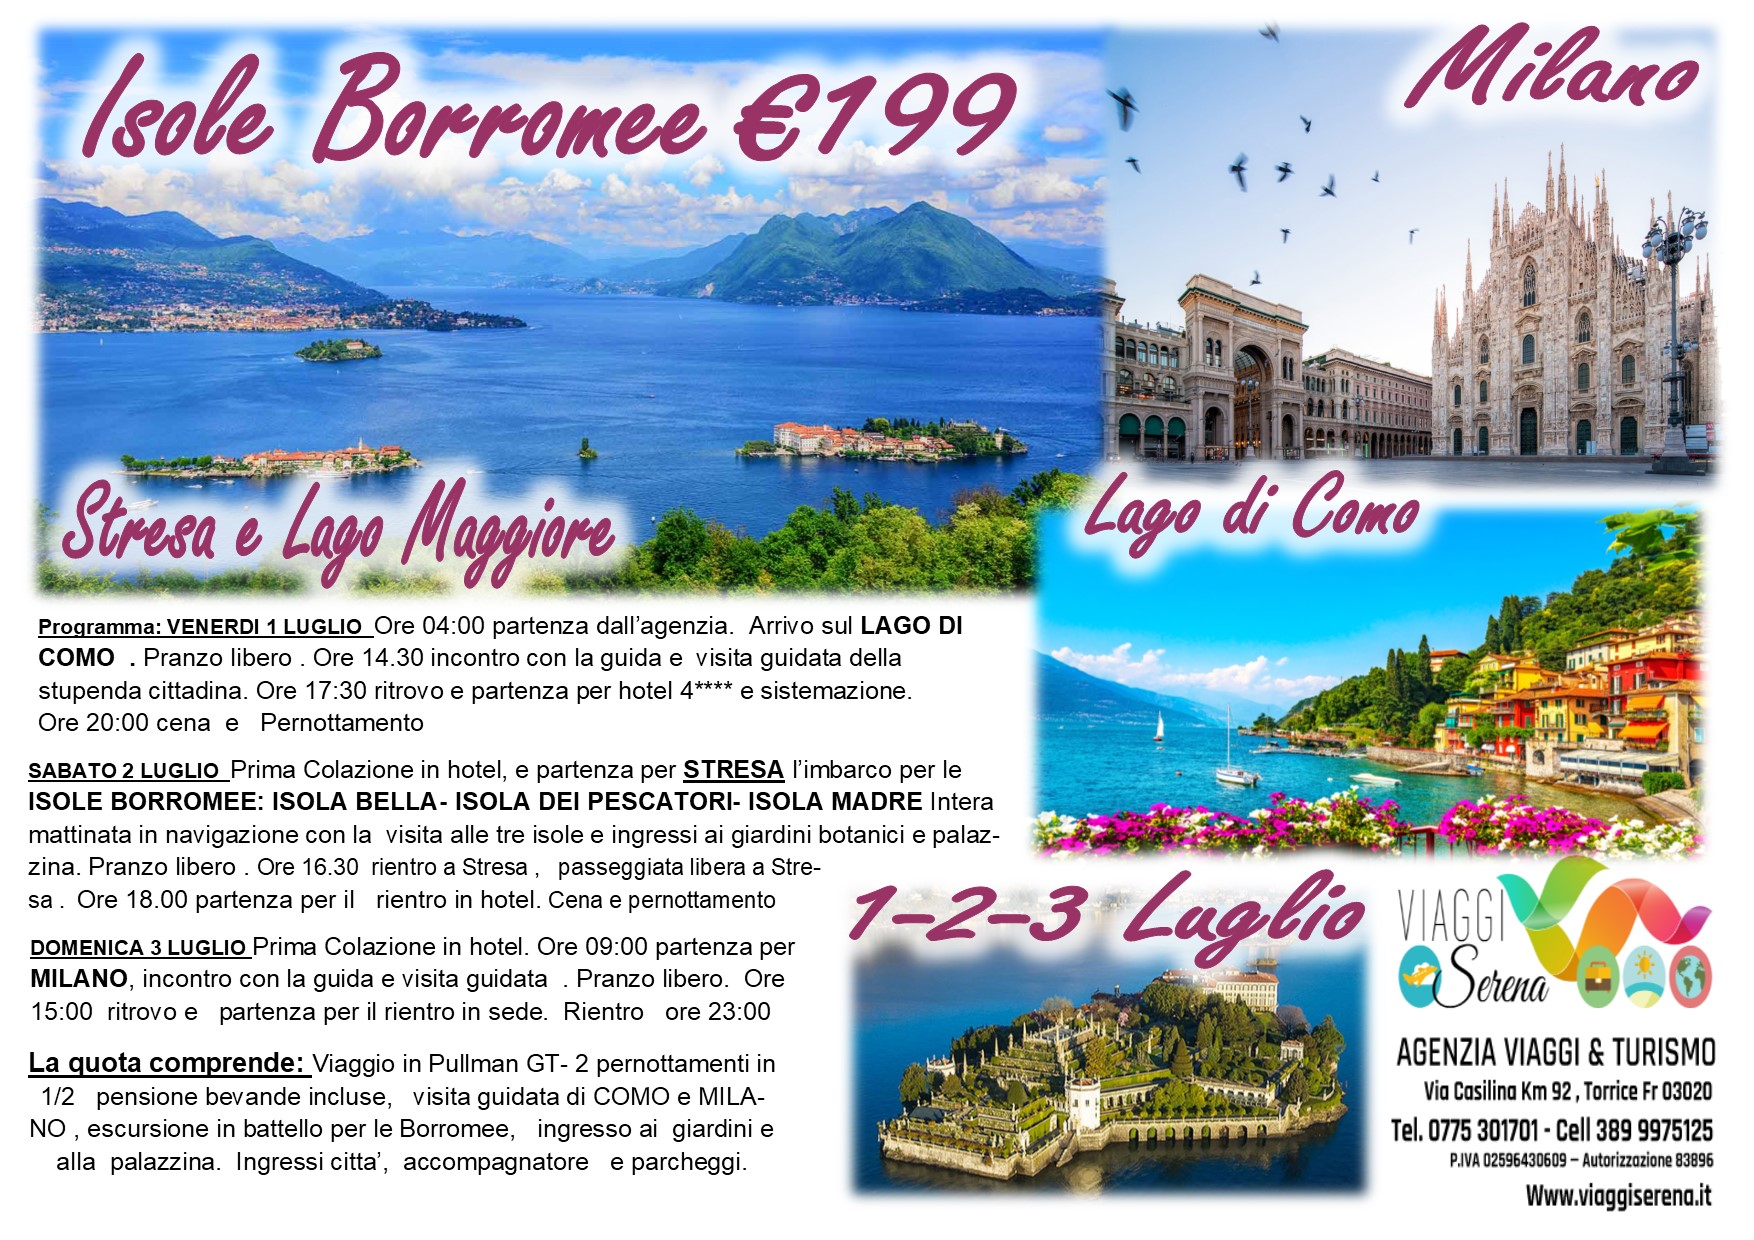 Viaggi di Gruppo: Isole BORROMEE, Lago di Como & Milano 1-2-3 Luglio €199,00